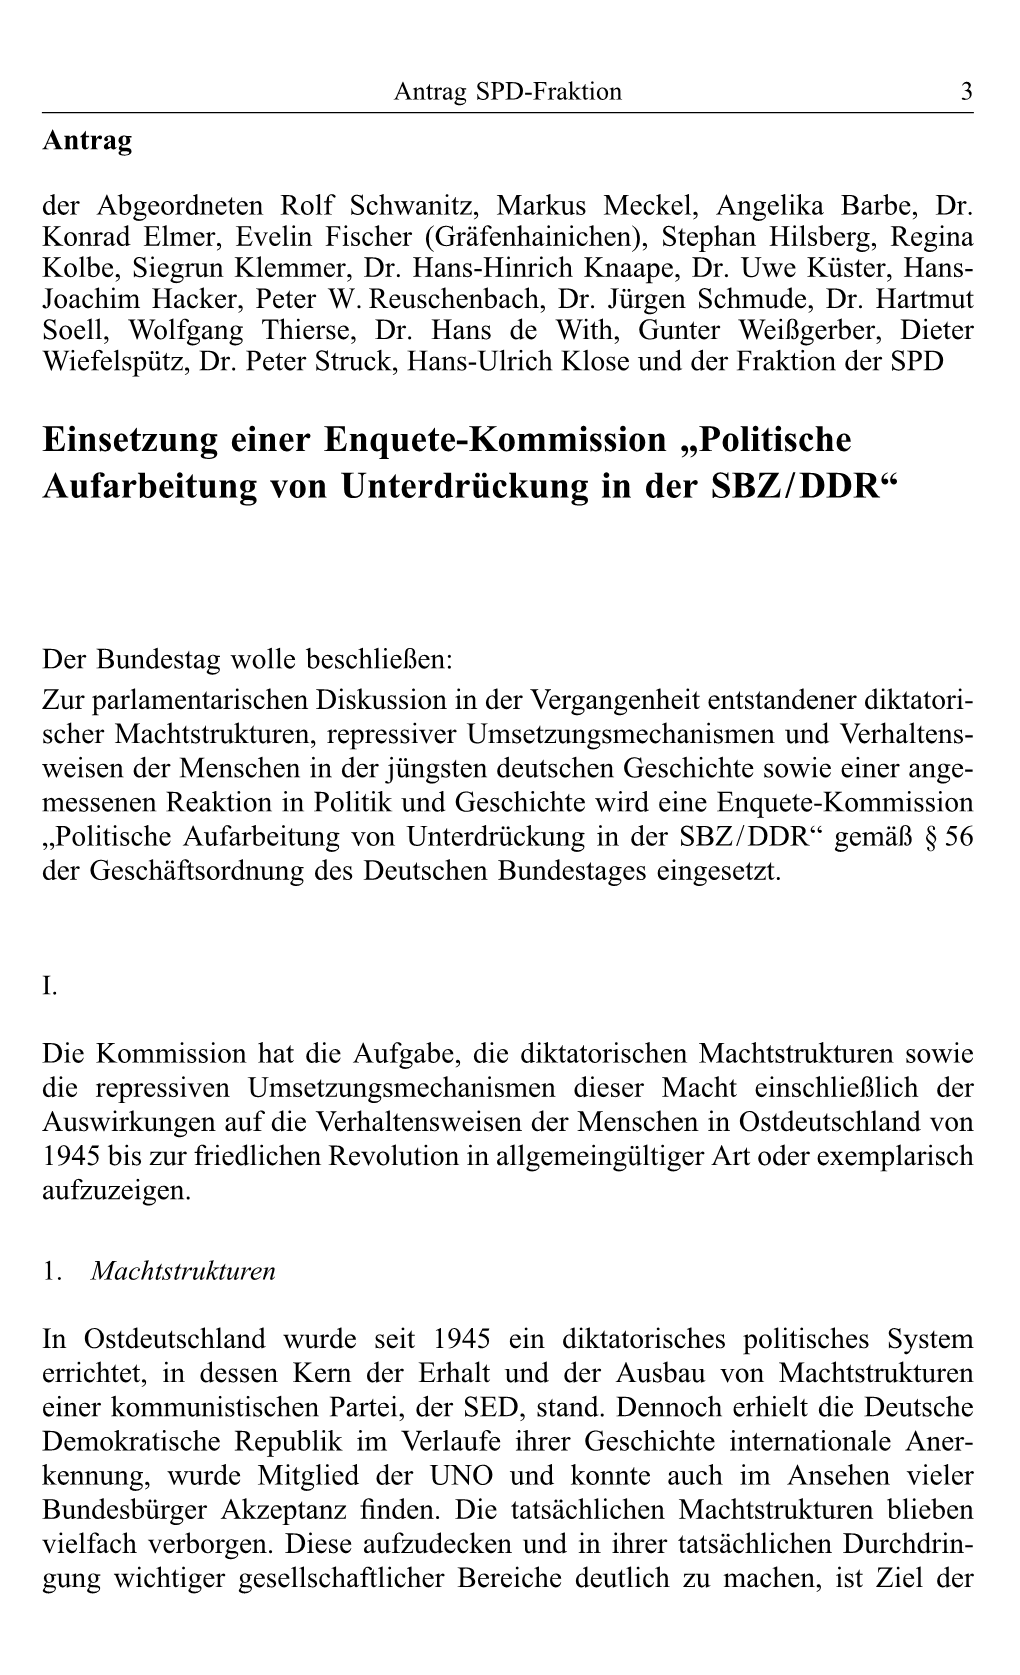 Einsetzung Einer Enquete-Kommission „Politische Aufarbeitung Von Unterdrückung in Der SBZ/DDR“